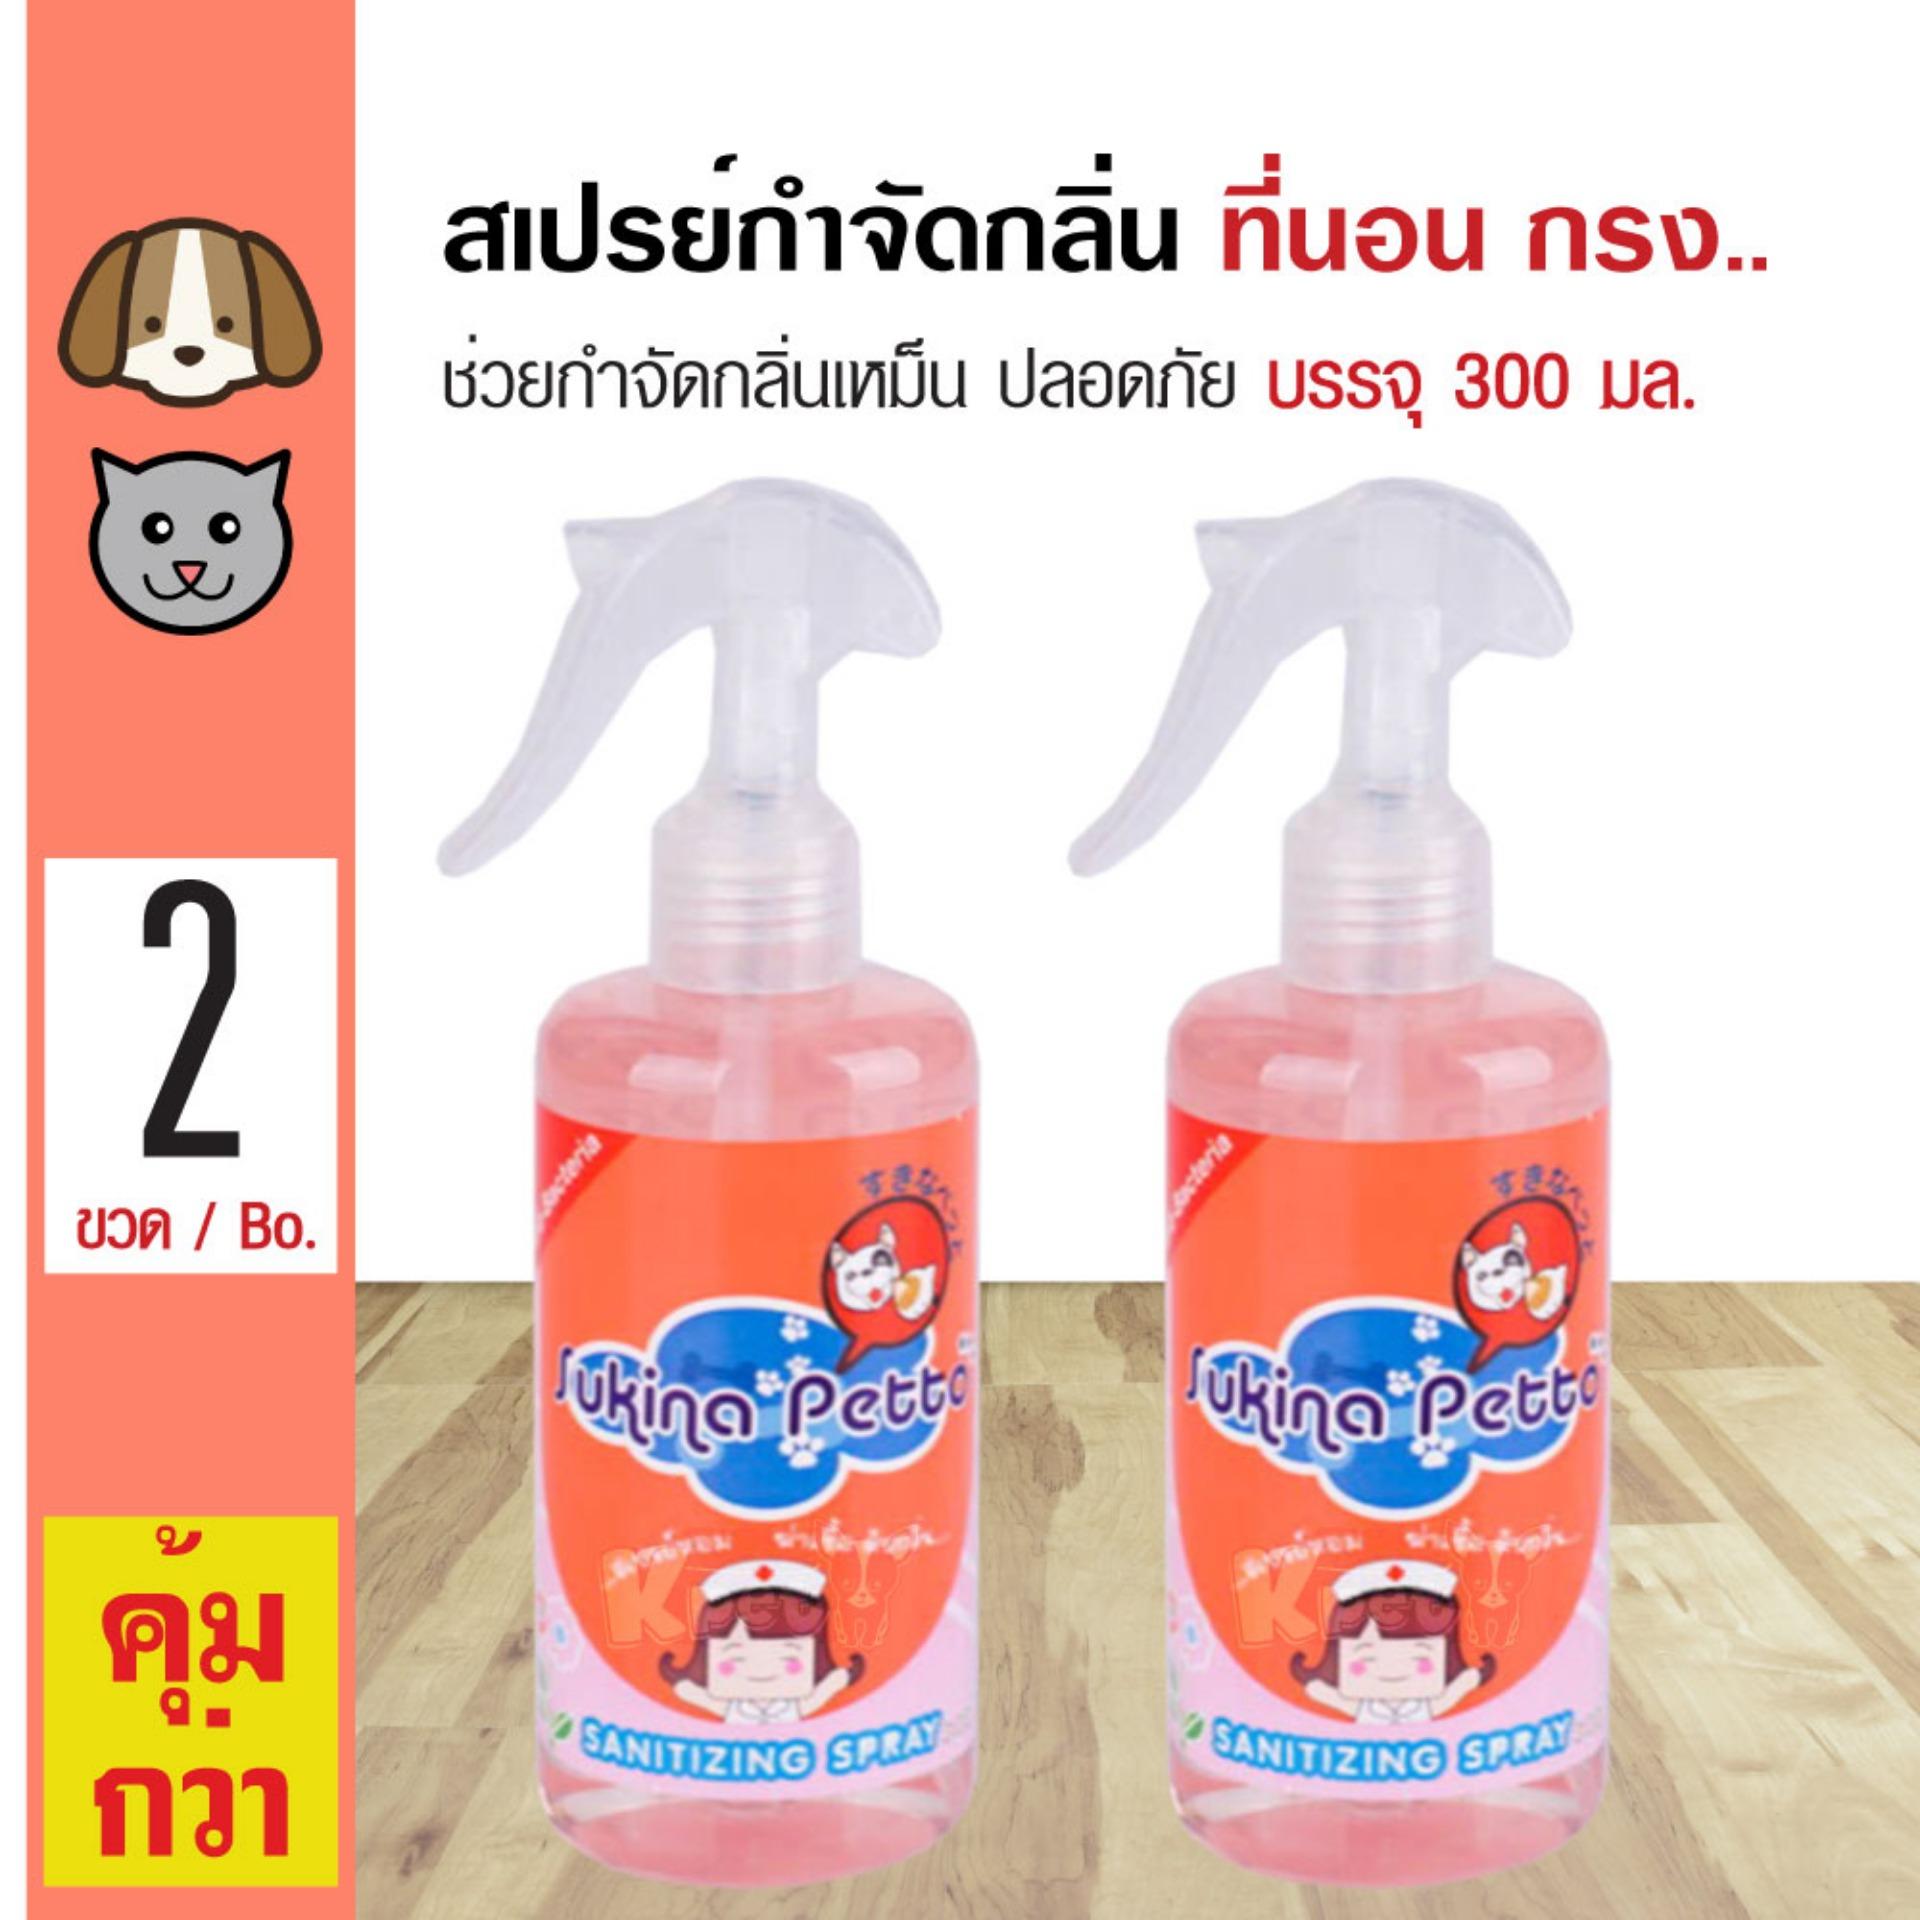 Sukina Petto Spray สเปรย์อเนกประสงค์ ดับกลิ่นปัสสวะ ใช้ฉีดที่นอน พื้น เบาะ กรง สำหรับสุนัขและแมว (300 มล/ขวด) x 2 ขวด